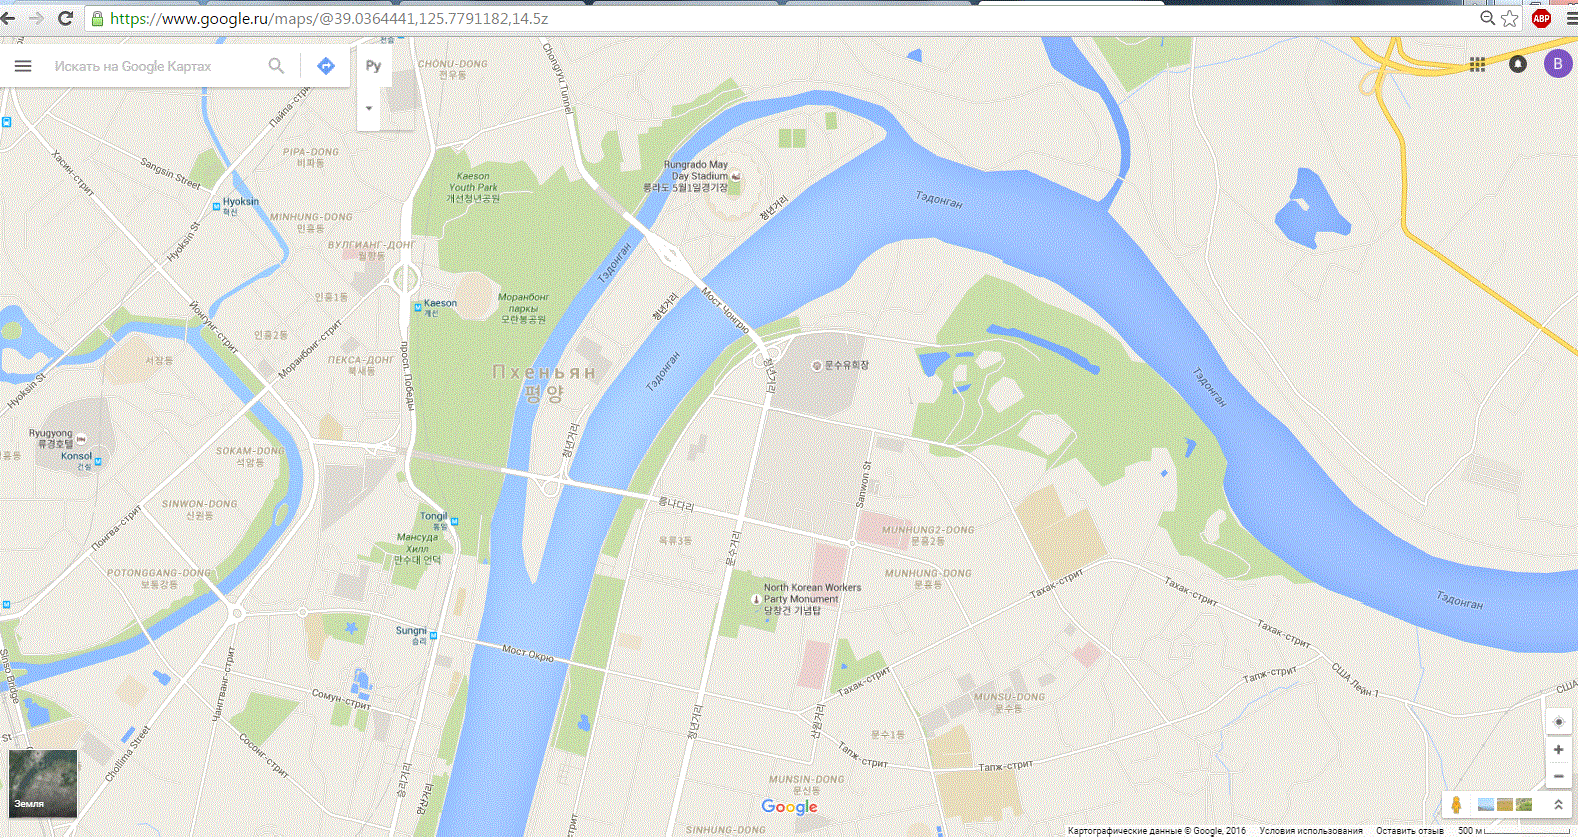 Гугл карты. Гуй карта. Карта Москвы Google Maps. Карта Москвы гугл карты. Приморская гугл карты